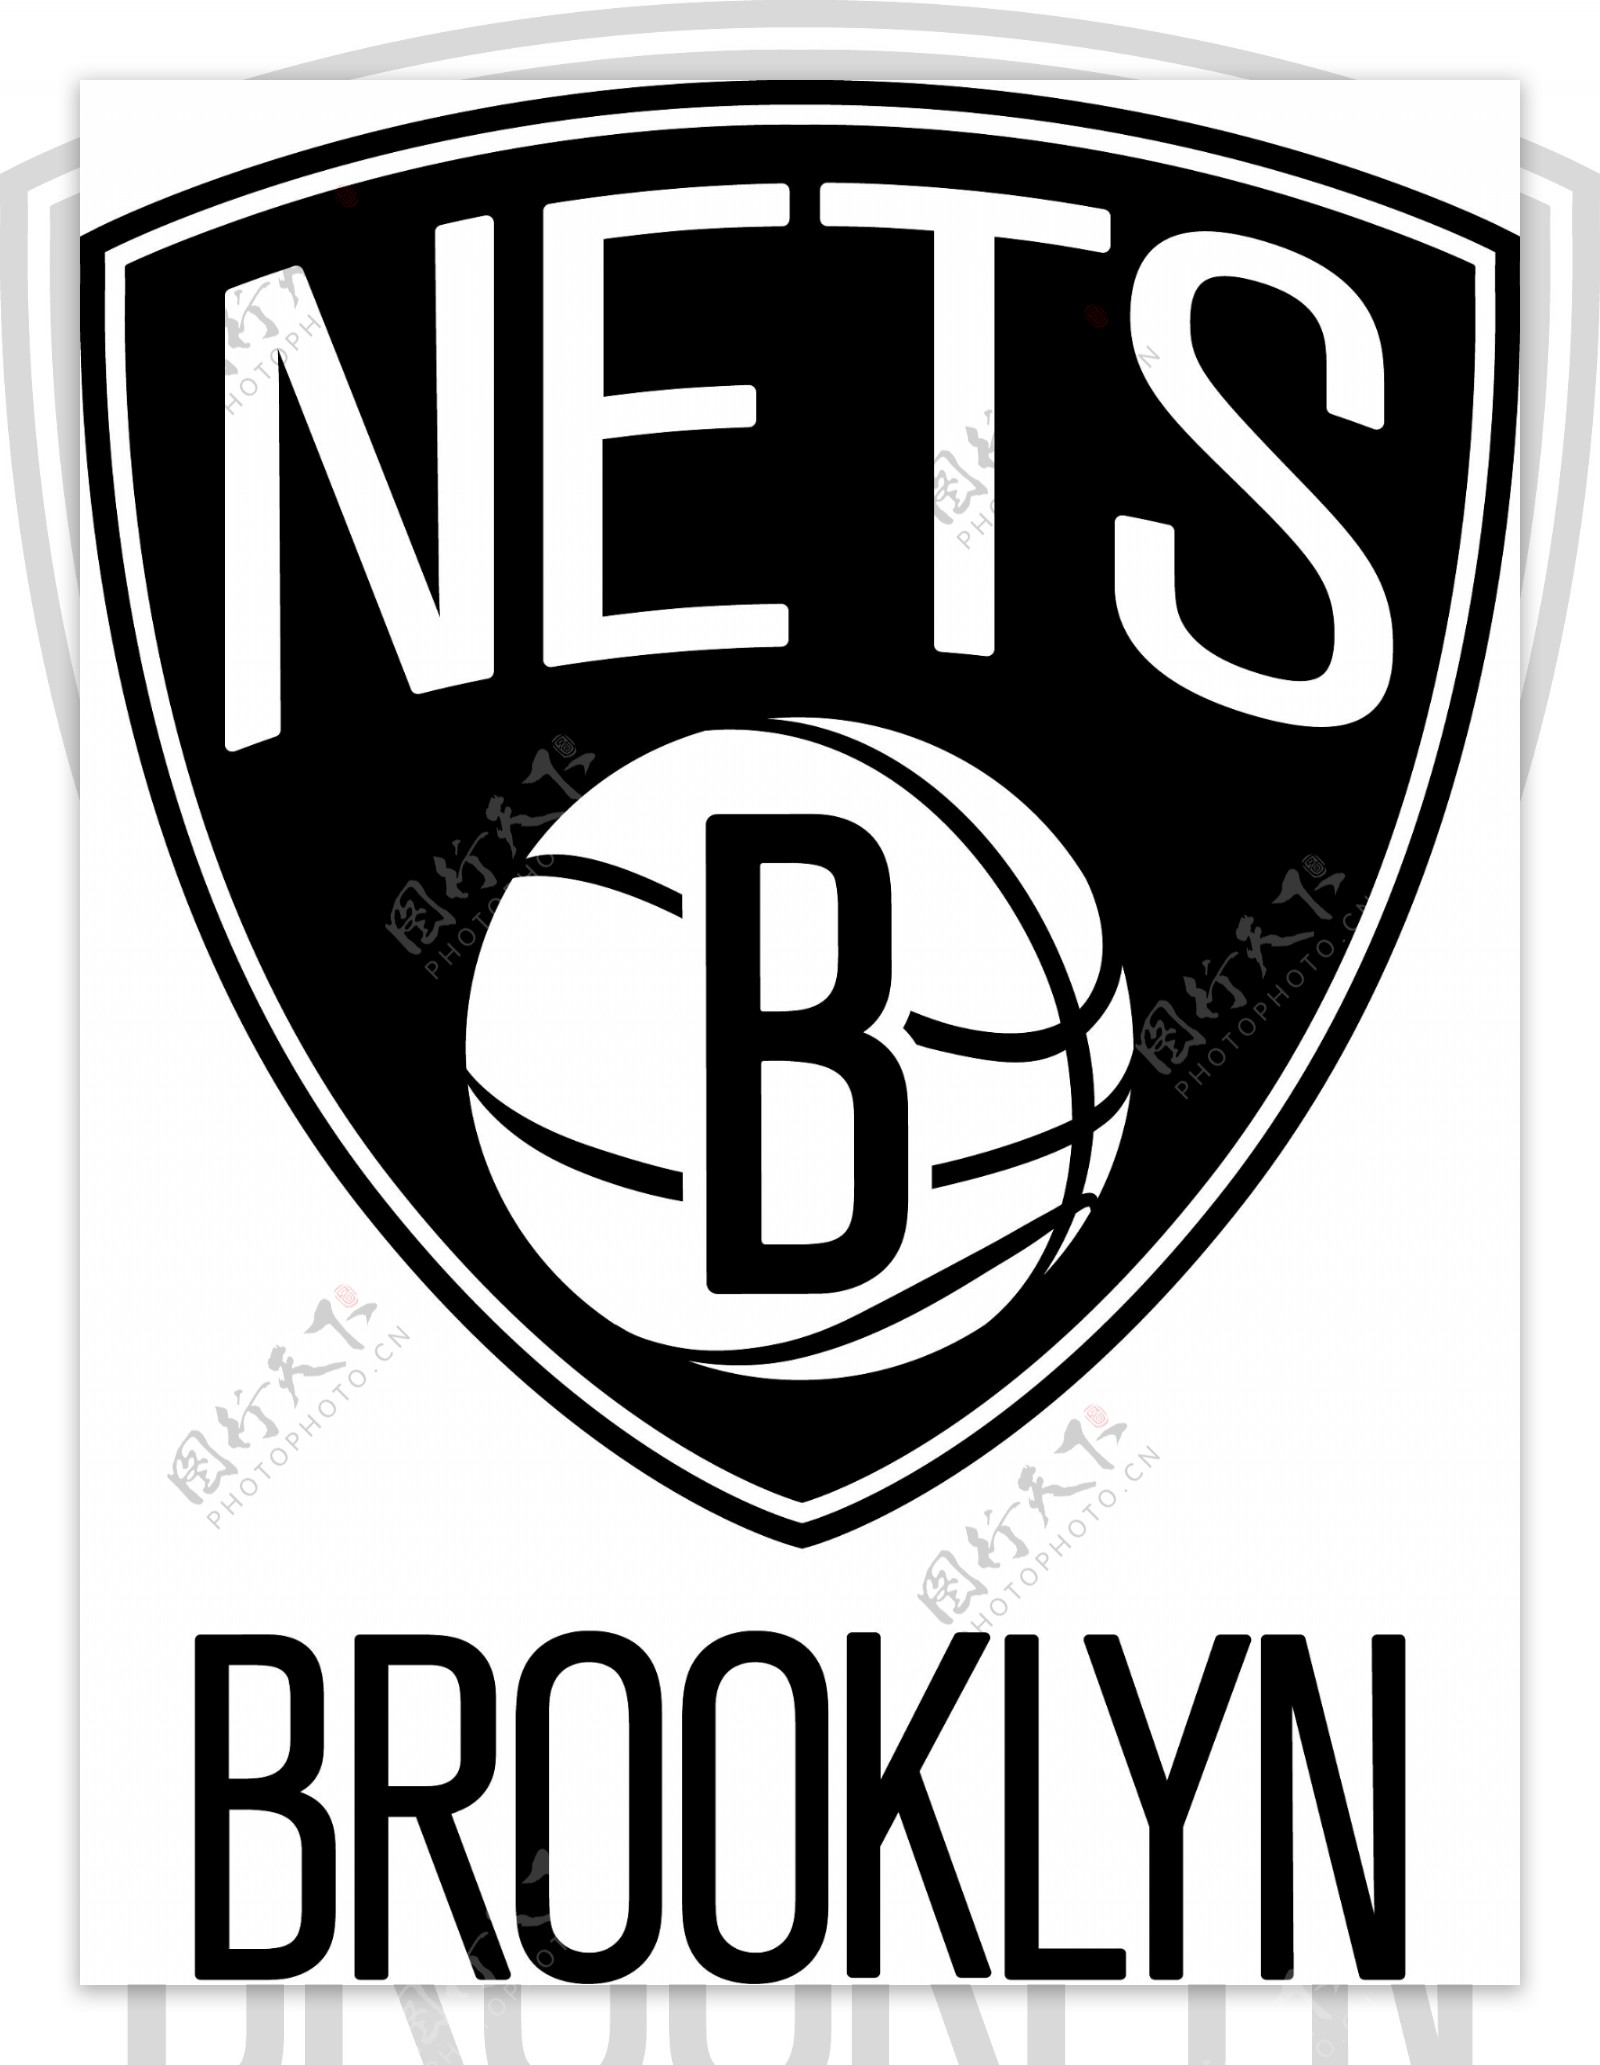 布鲁克林篮网队徽标